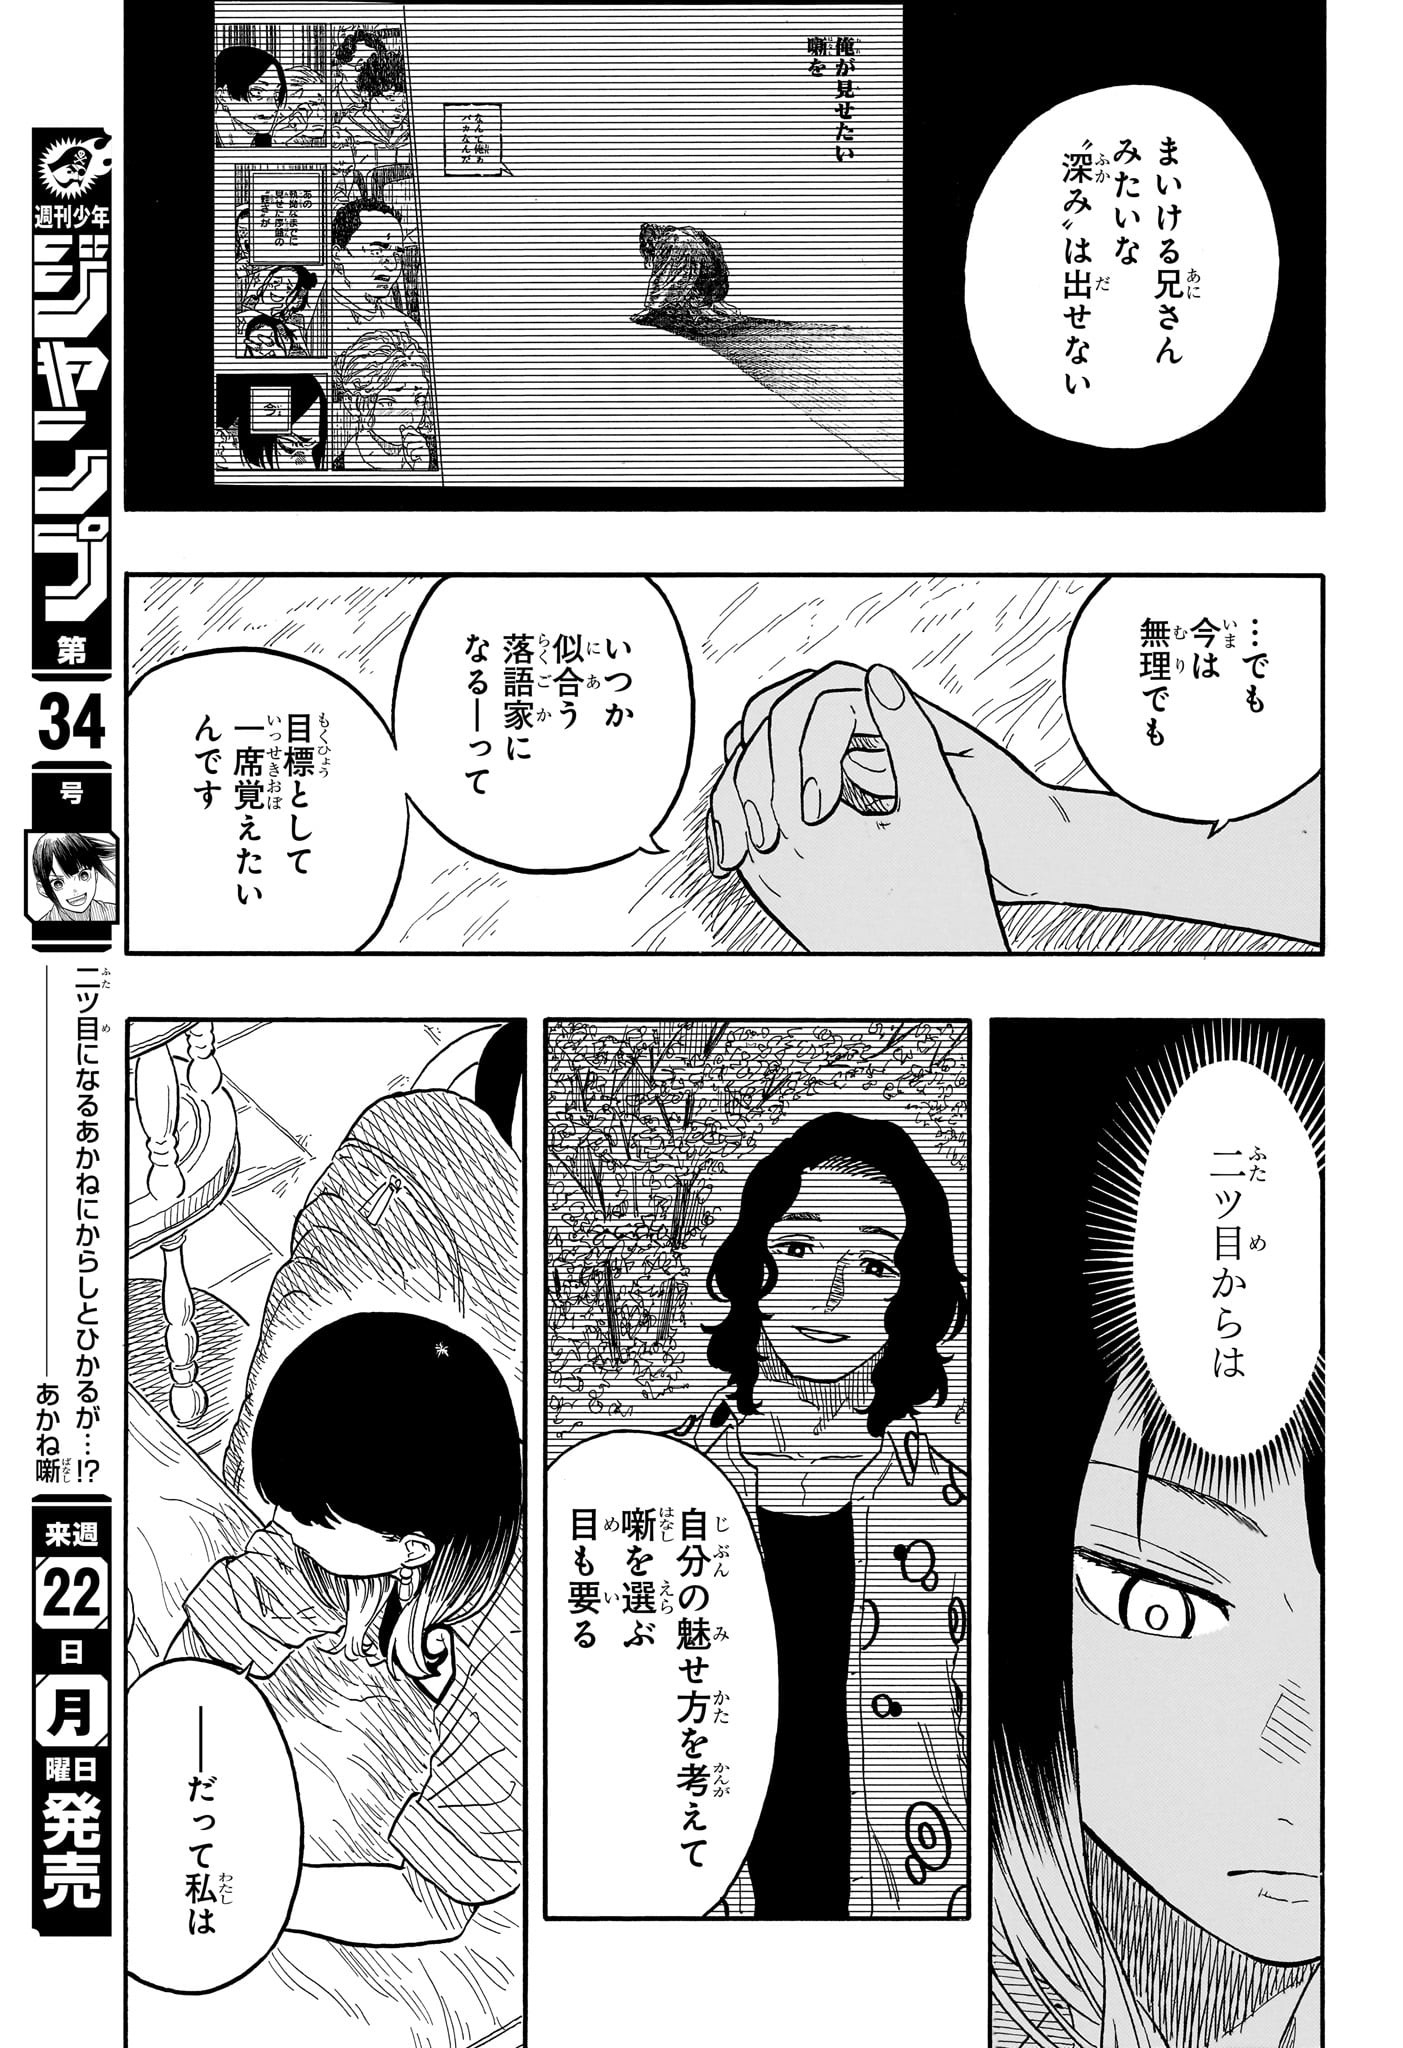 Akane-Banashi - Chapter 118 - Page 19